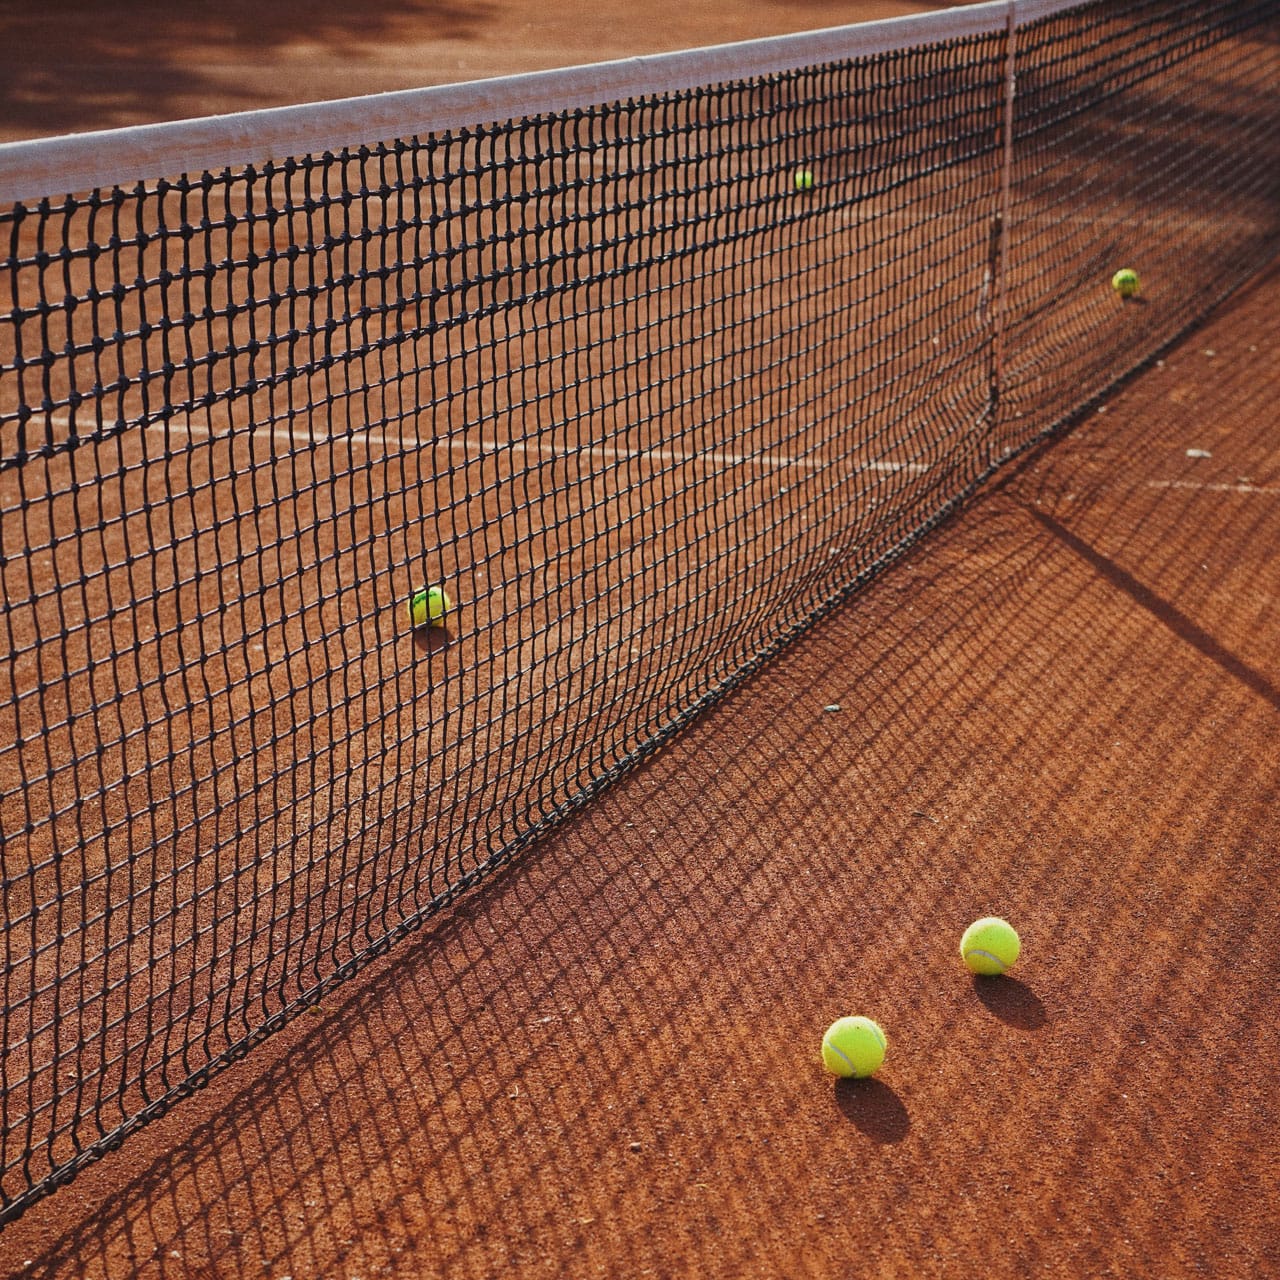 Tennis Match-Up